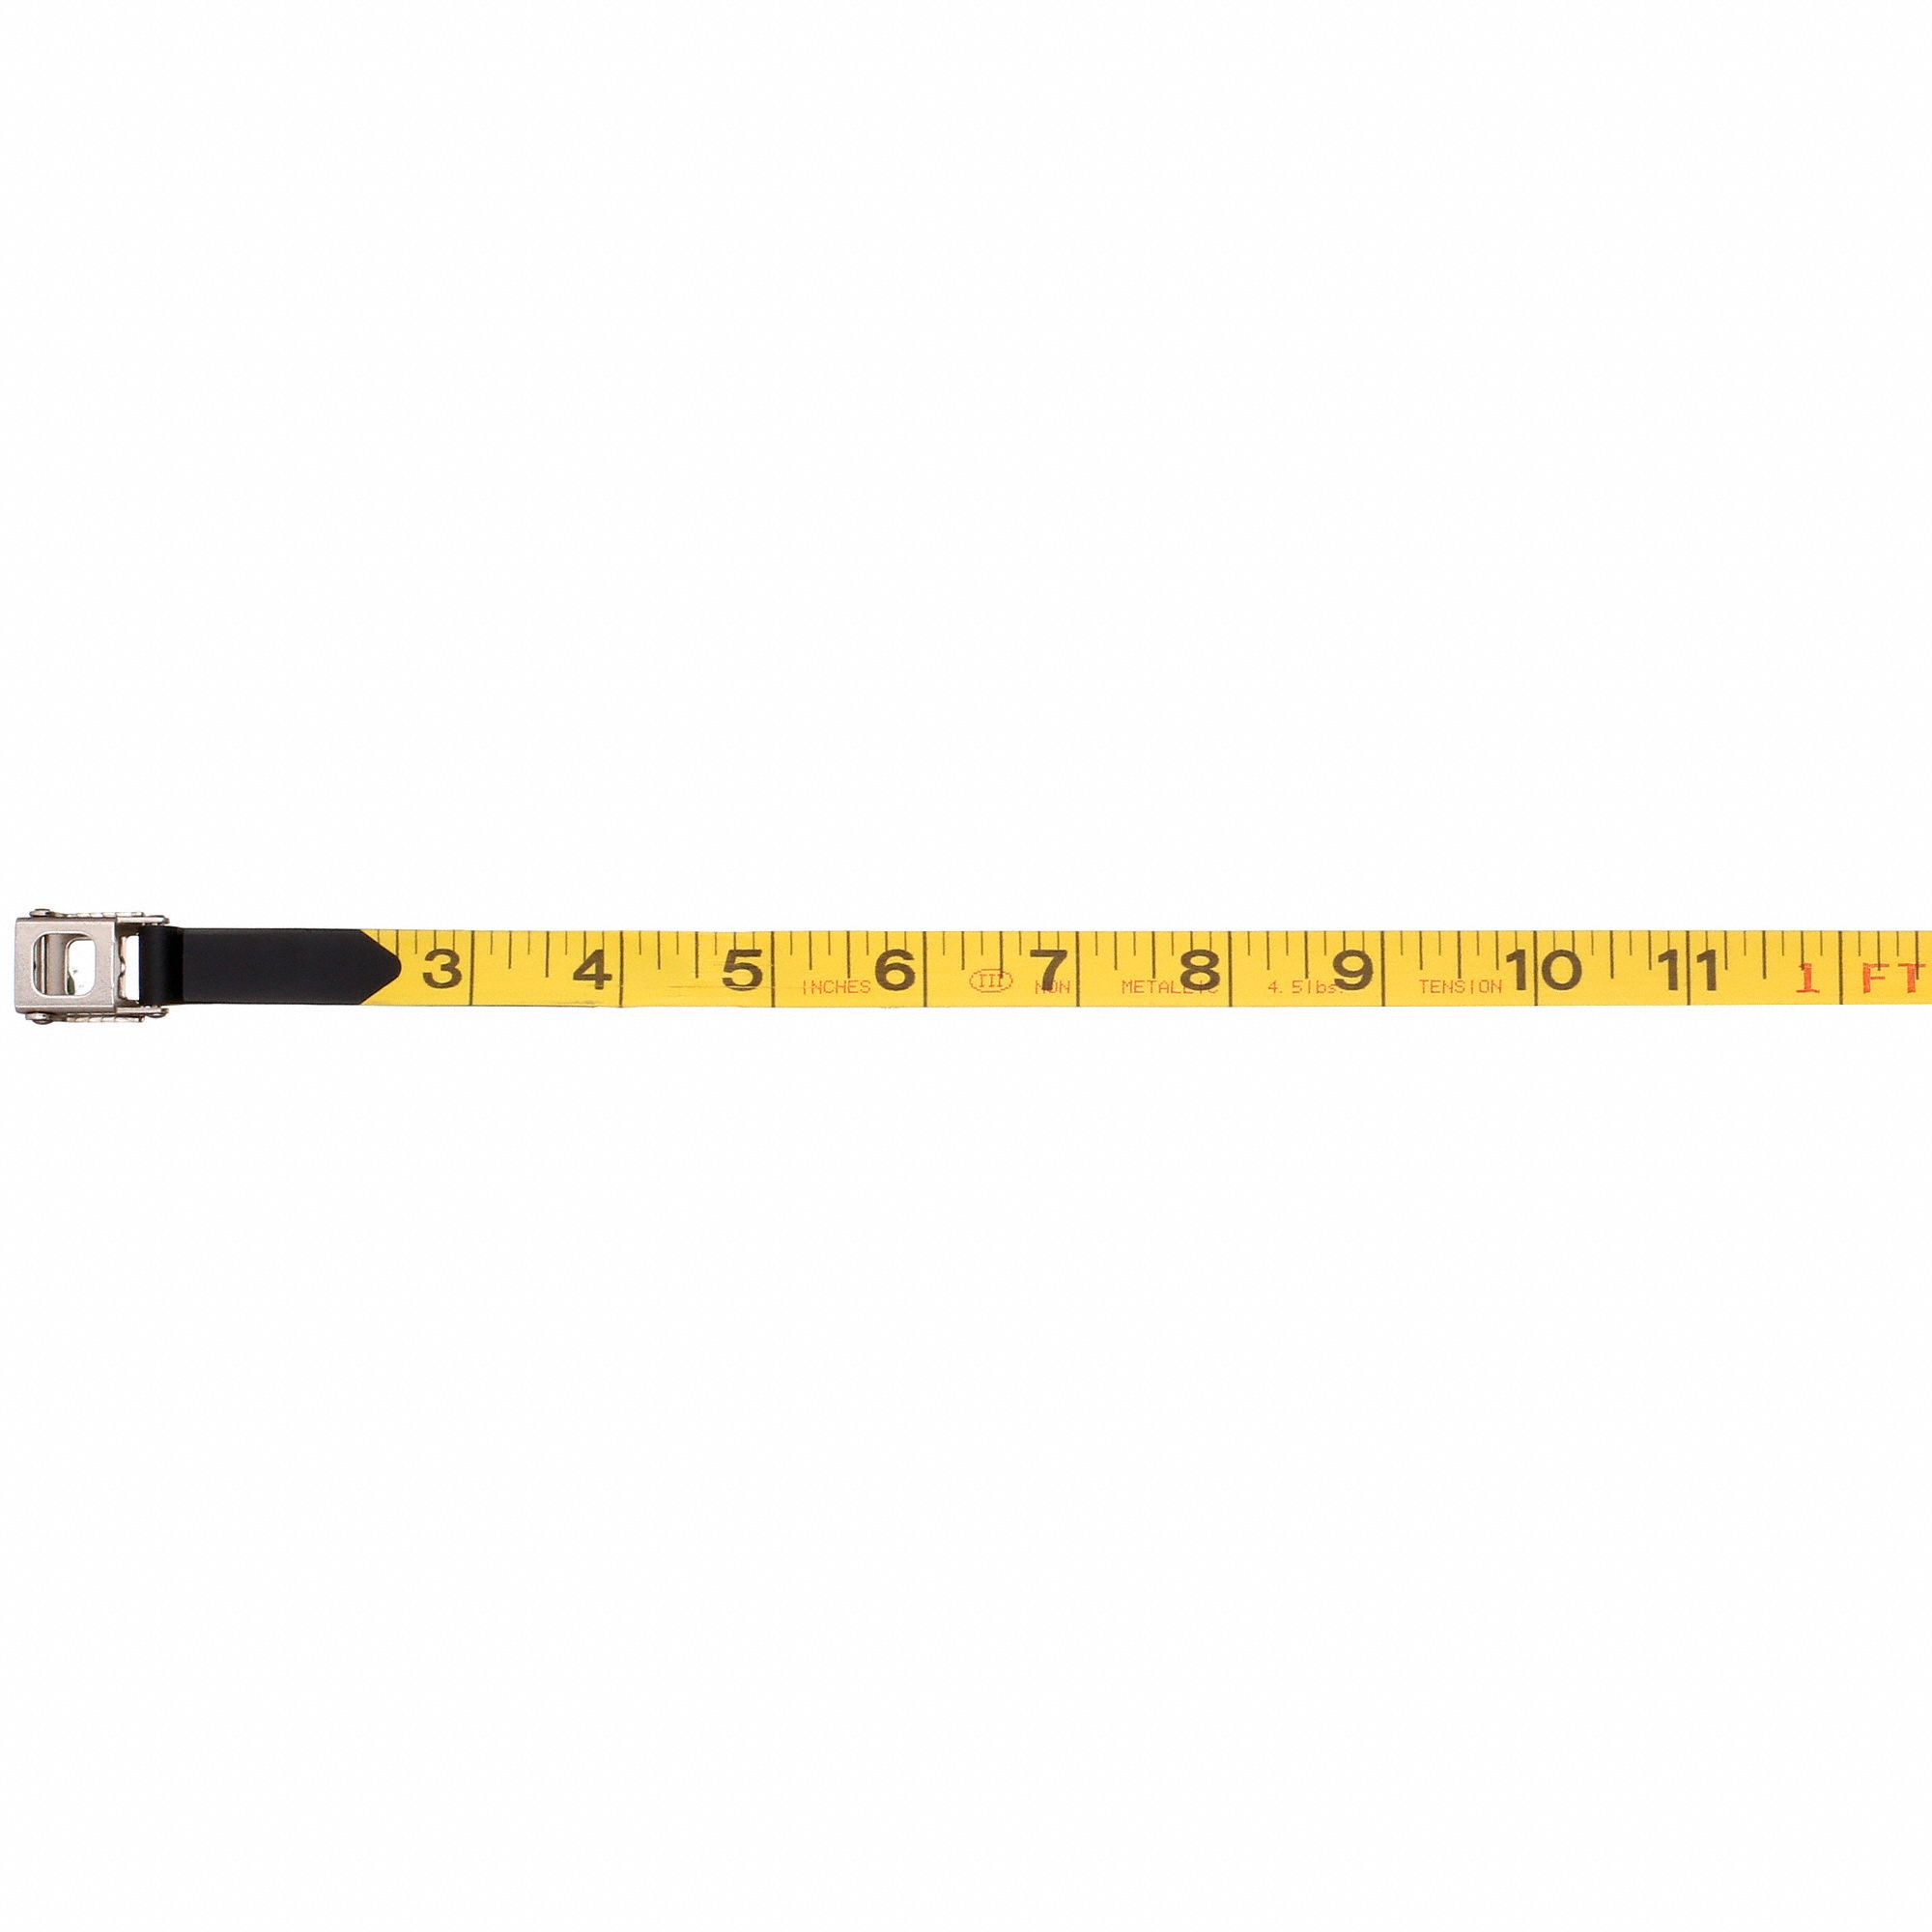 Lufkin FE200 1/2" x 200' Hi-Viz Orange Fiberglass Tape Measure Feet & Inches 